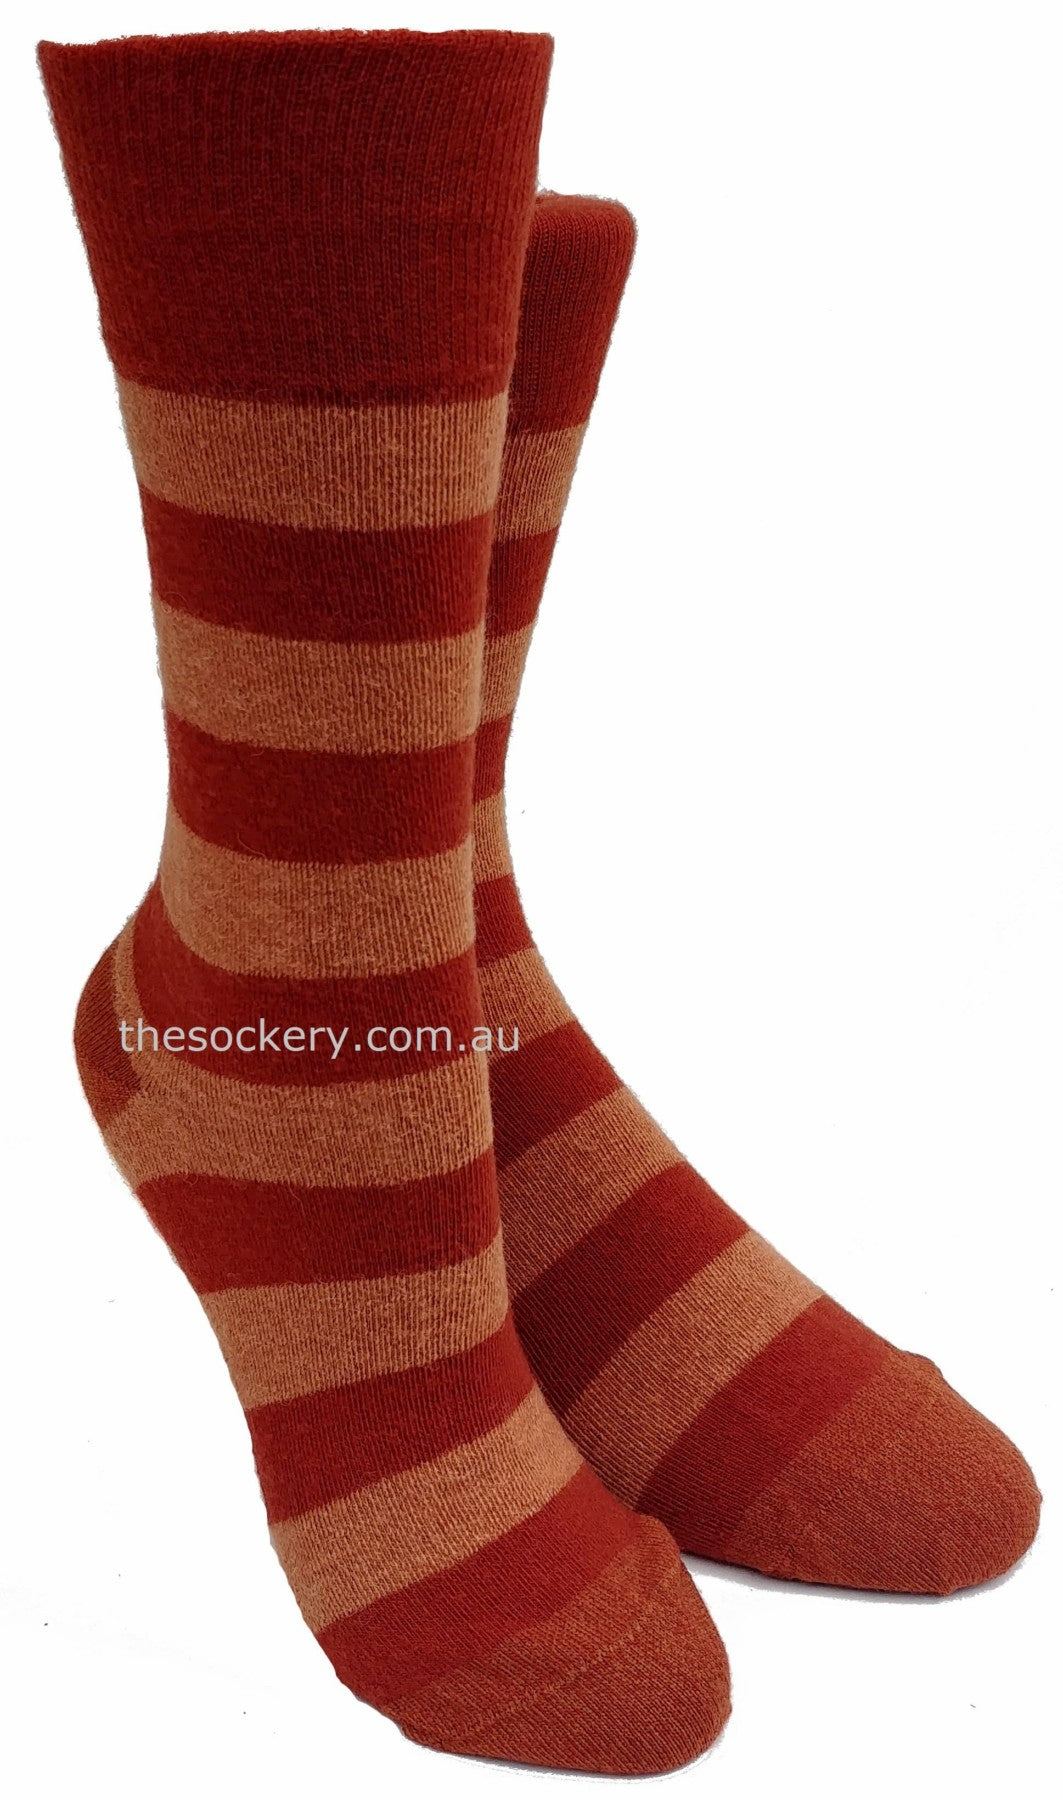 Merino and Alpaca Blend Striped Socks in Terracotta - Aussie Made